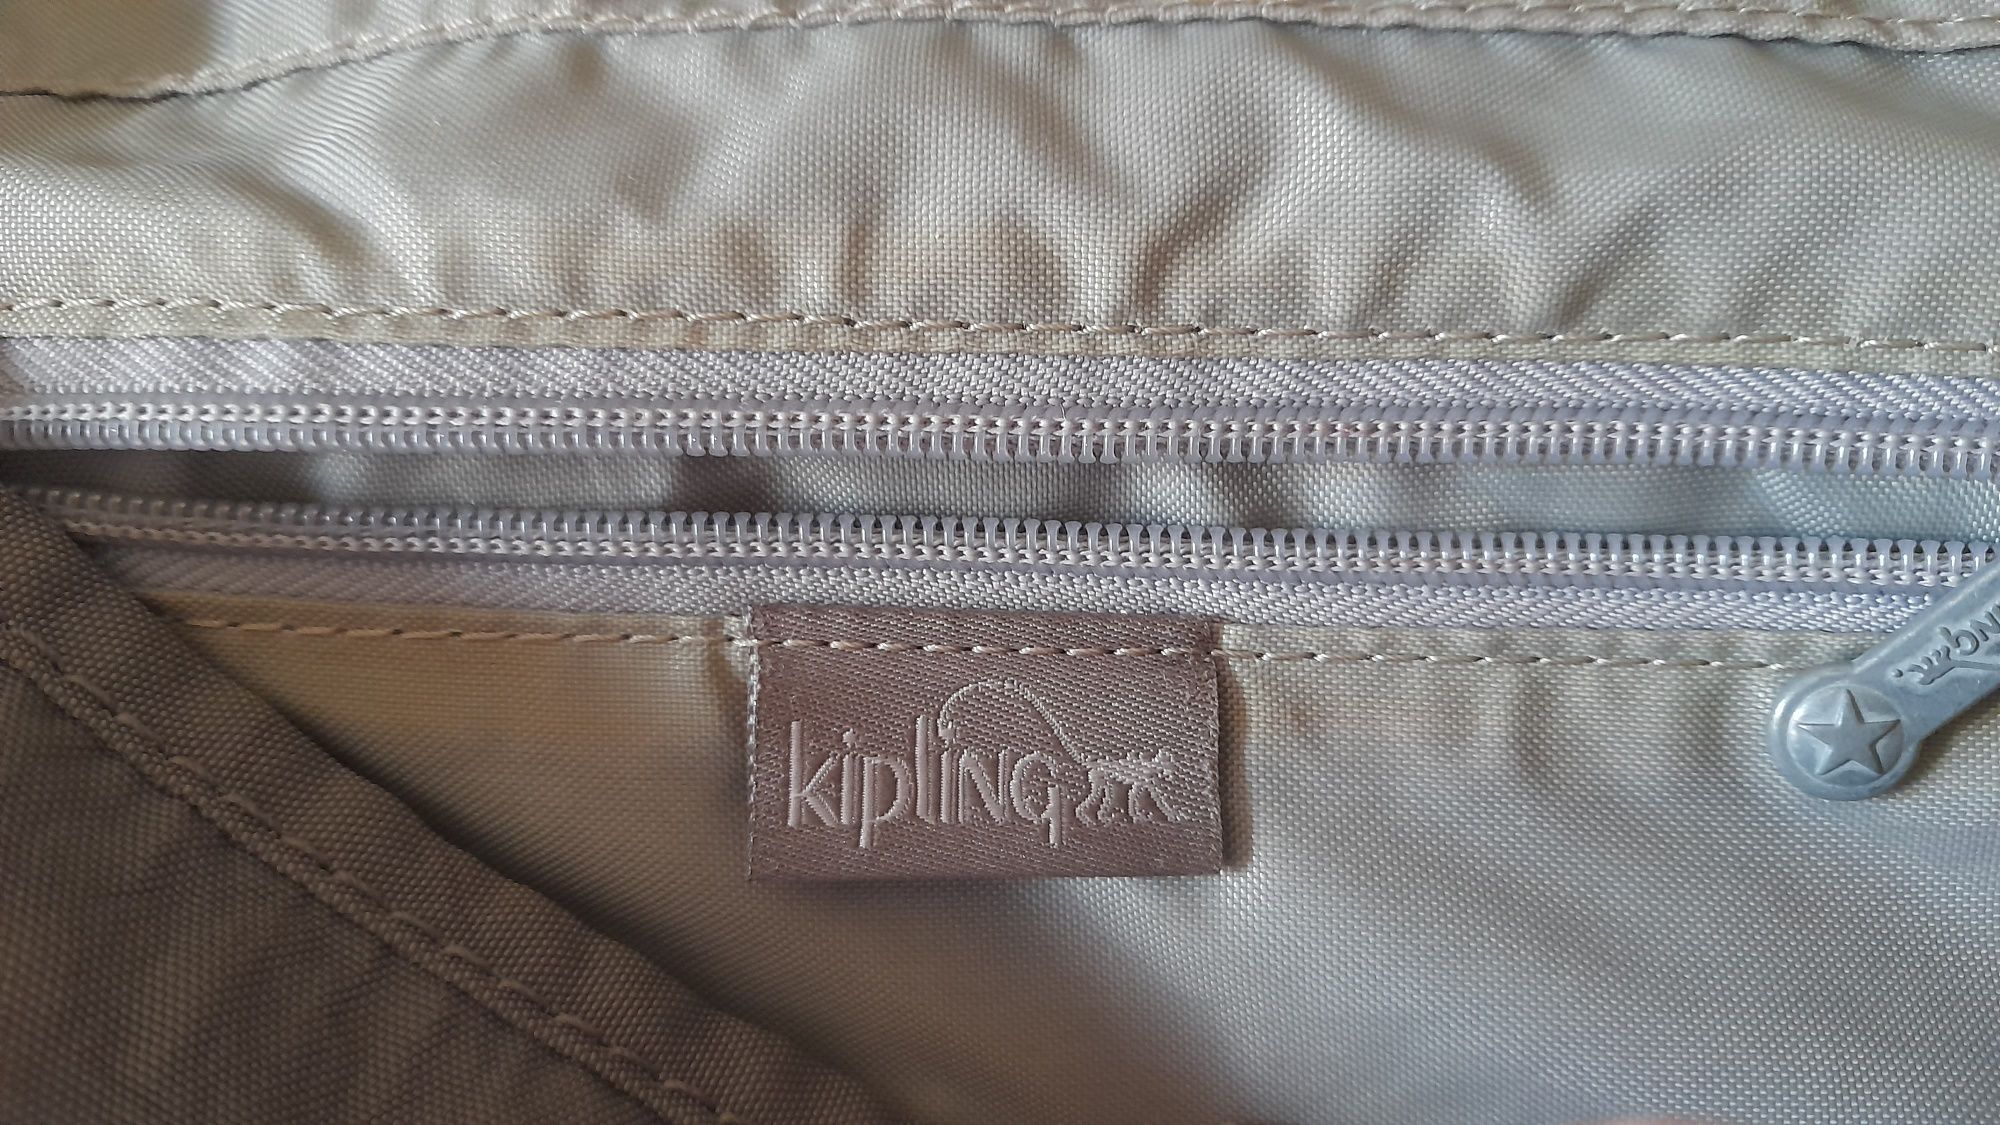 Bolsa Kepling cor verde seco tamanho 33x30 cm - Bom estado